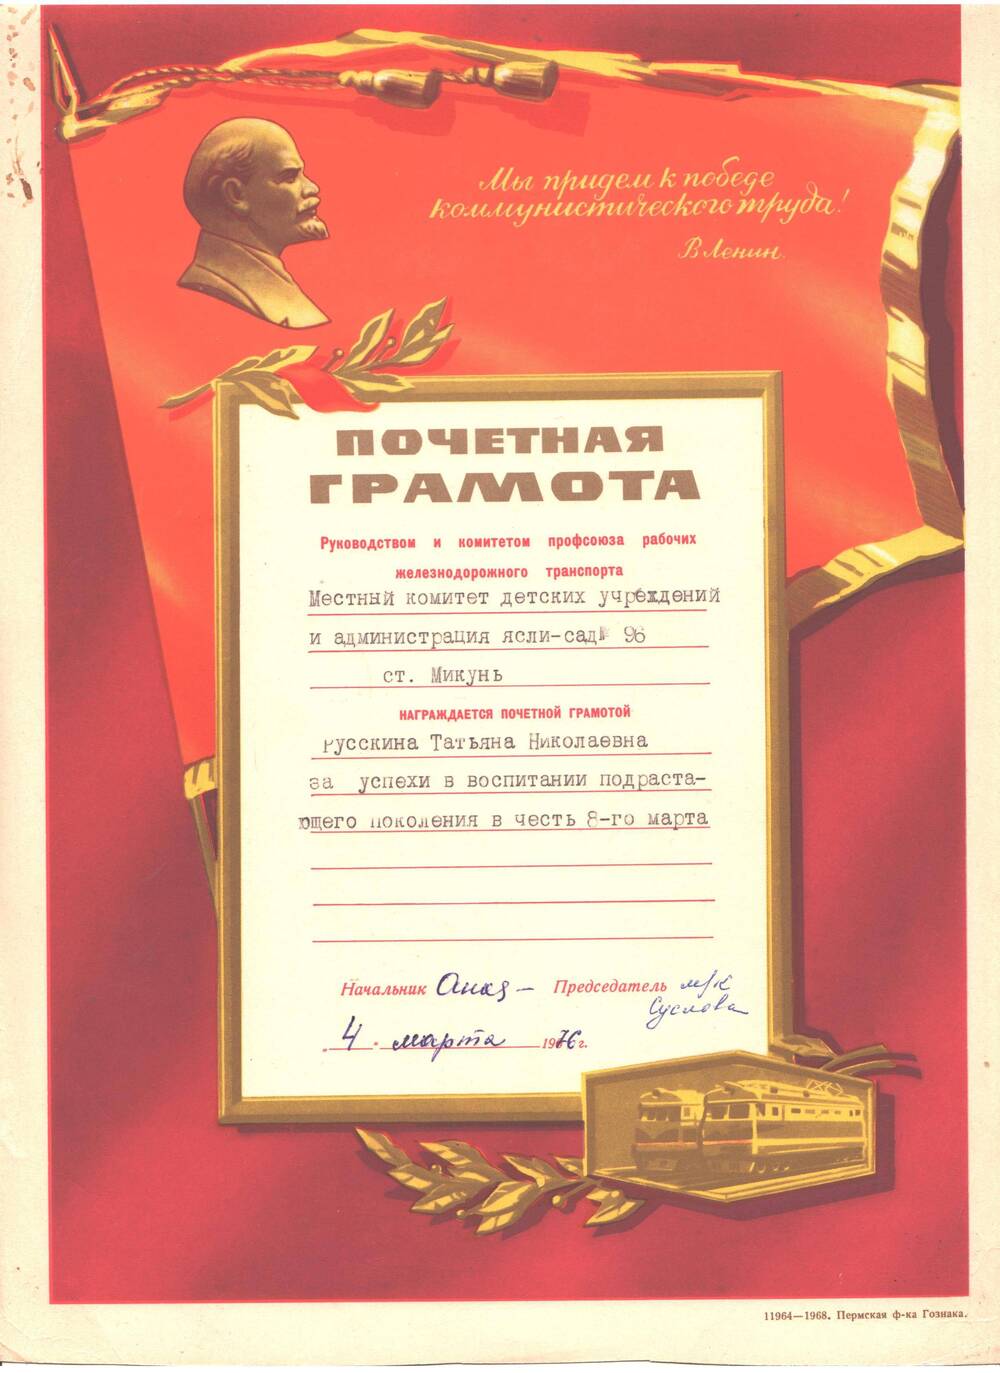 Почетная грамота Русскина Татьяна Николаевна награждена за успехи в воспитании подрастающего поколения в честь 8-го Марта.